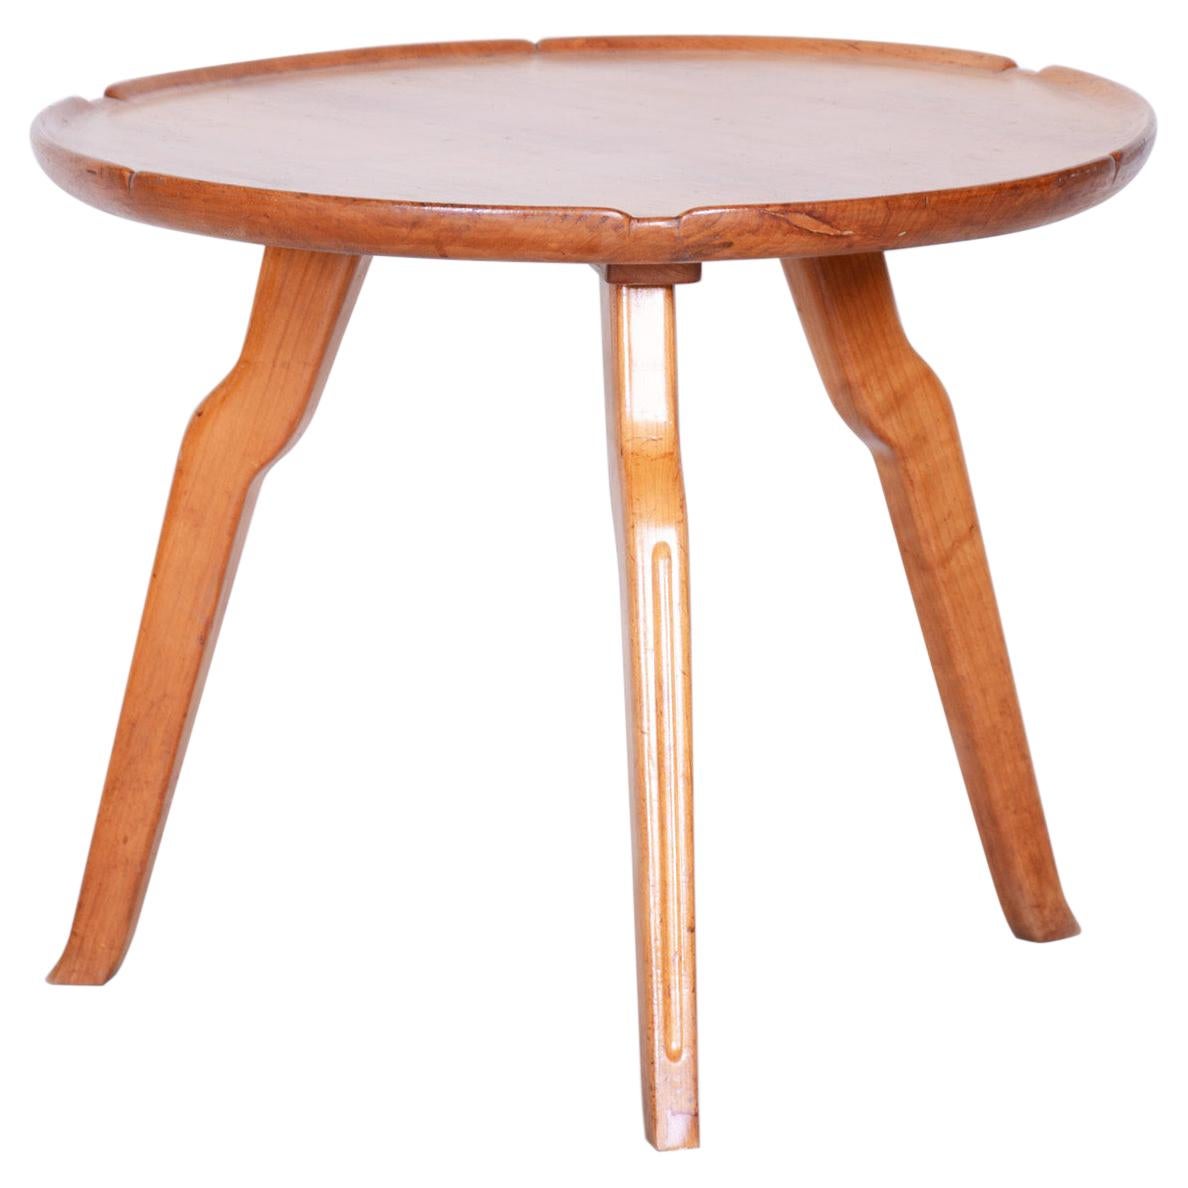 Petite table ronde marron, Tchèque, milieu du siècle dernier, fabriquée à partir d'un cerisier, années 1940